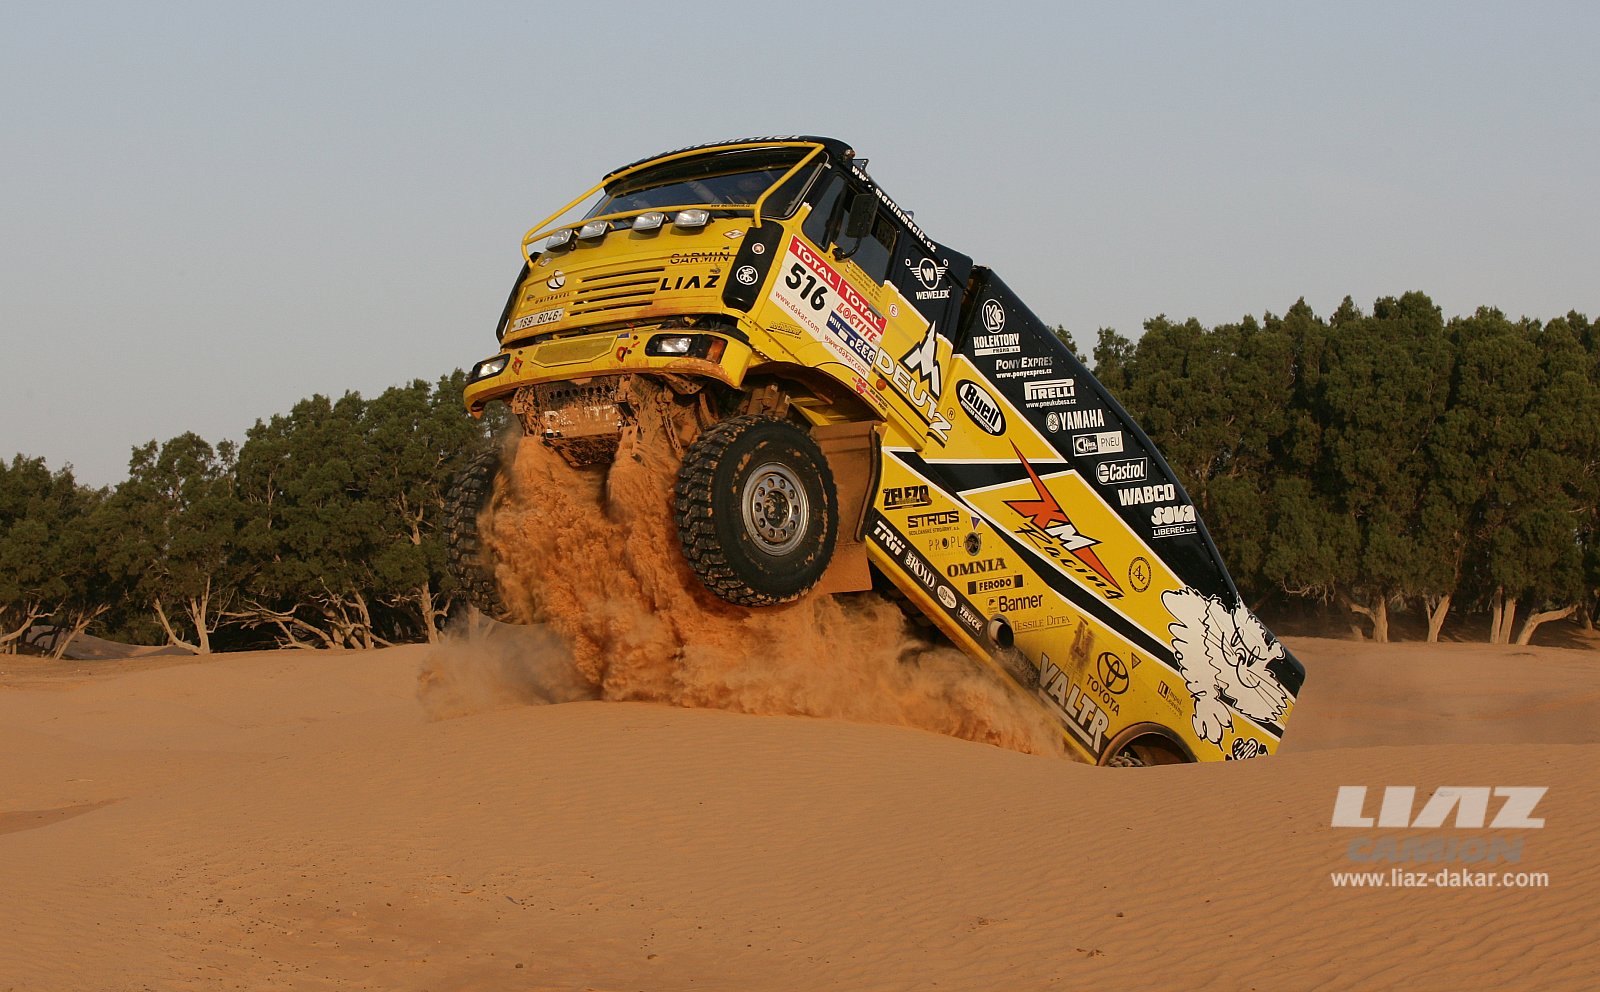 LIAZ Dakar 2009